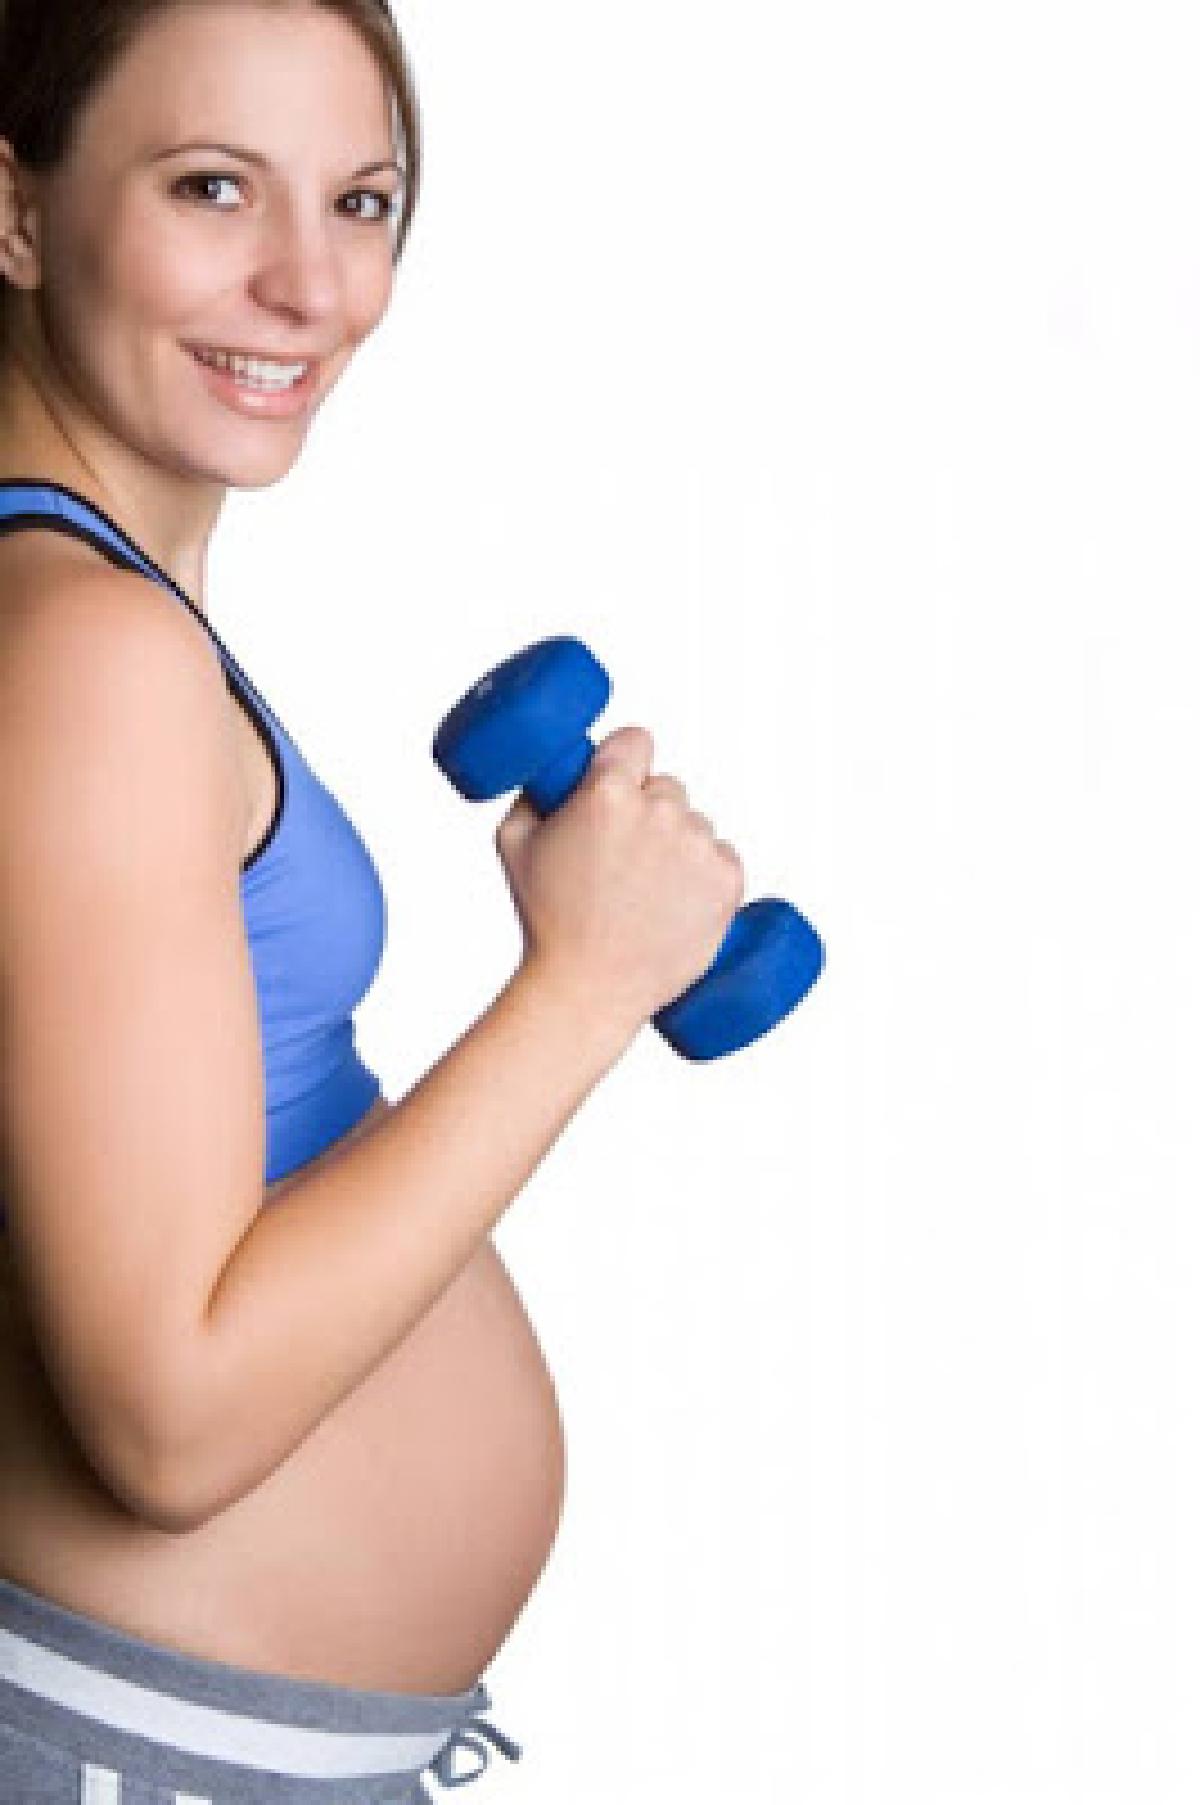 Πως να αποτρέψω τα περιττά κιλά στην εγκυμοσύνη